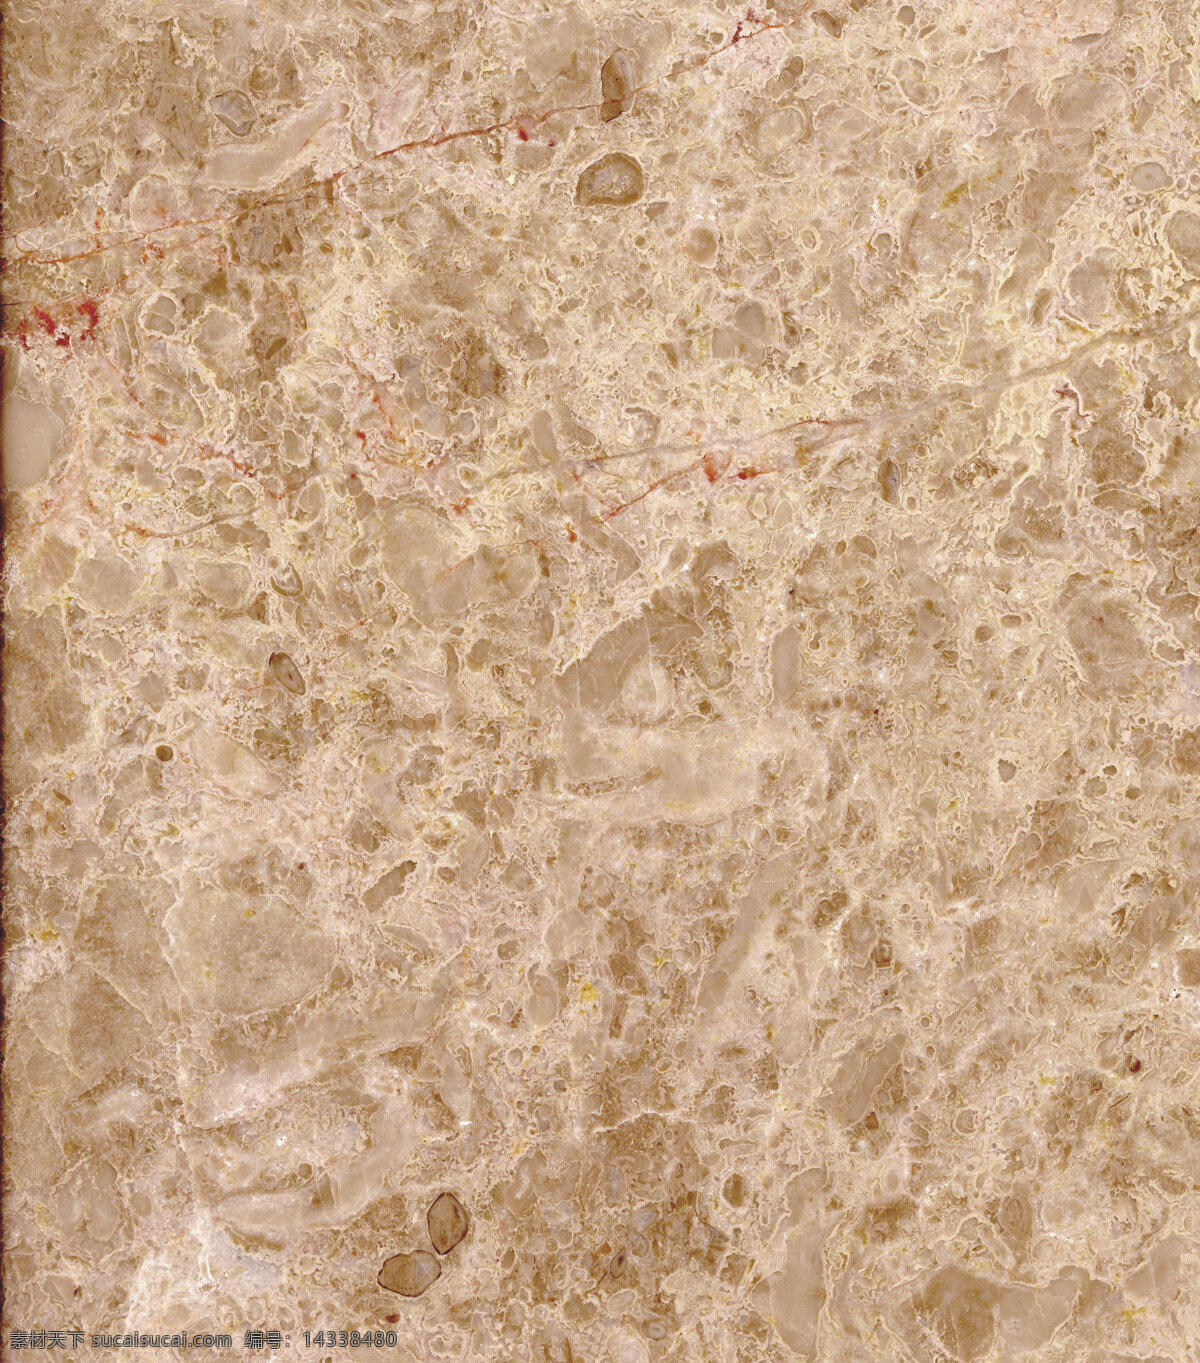 金 米黄 板材 大理石 底纹边框 花岗石 花岗岩 石材 条纹线条 金米黄 家居装饰素材 大理石素材